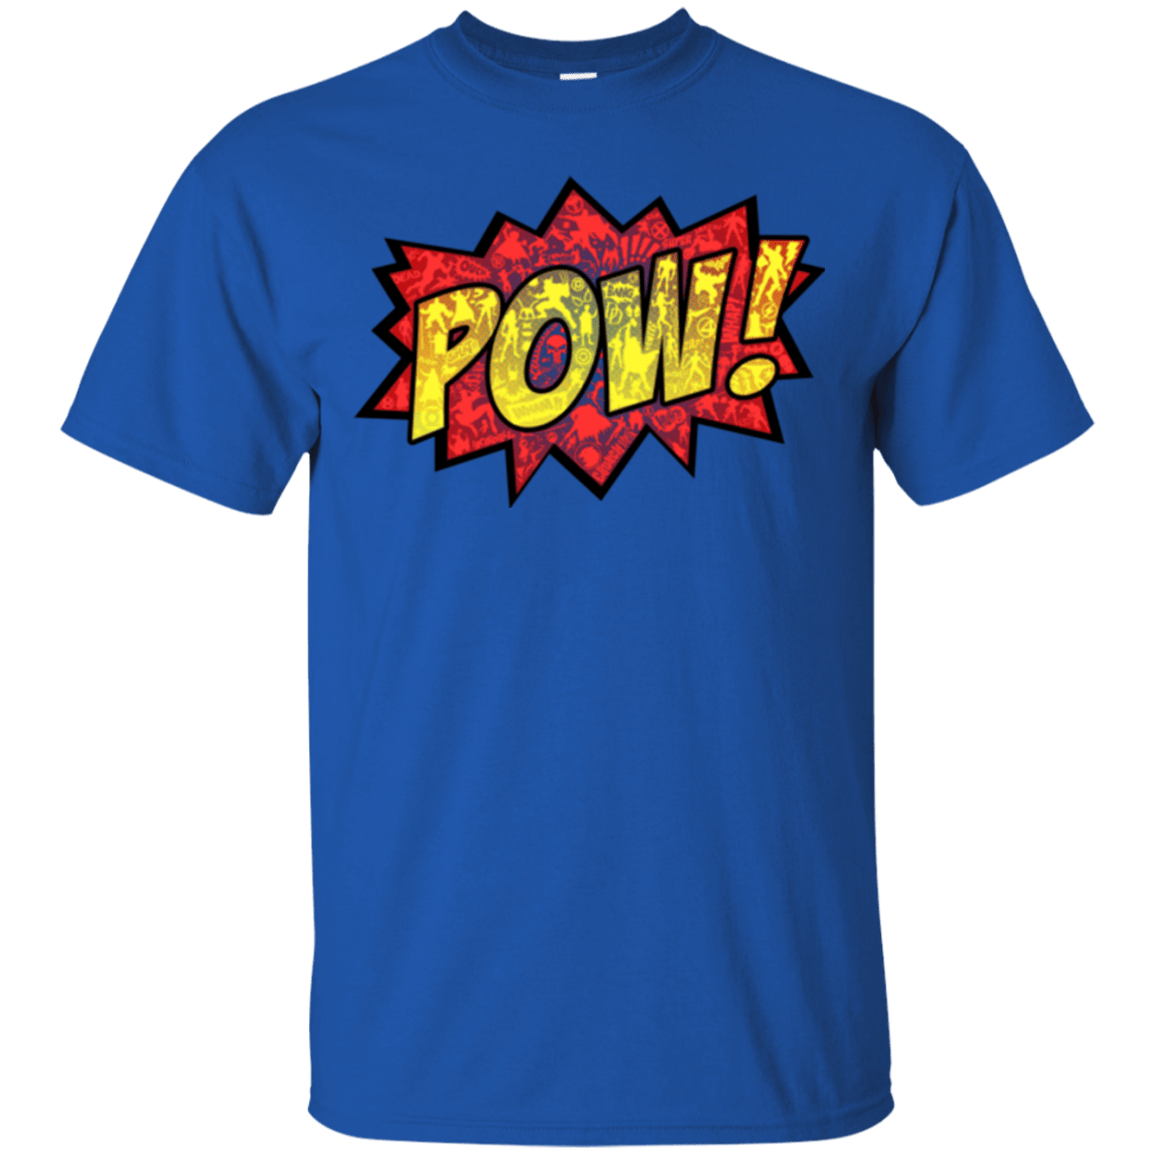 pow T-Shirt